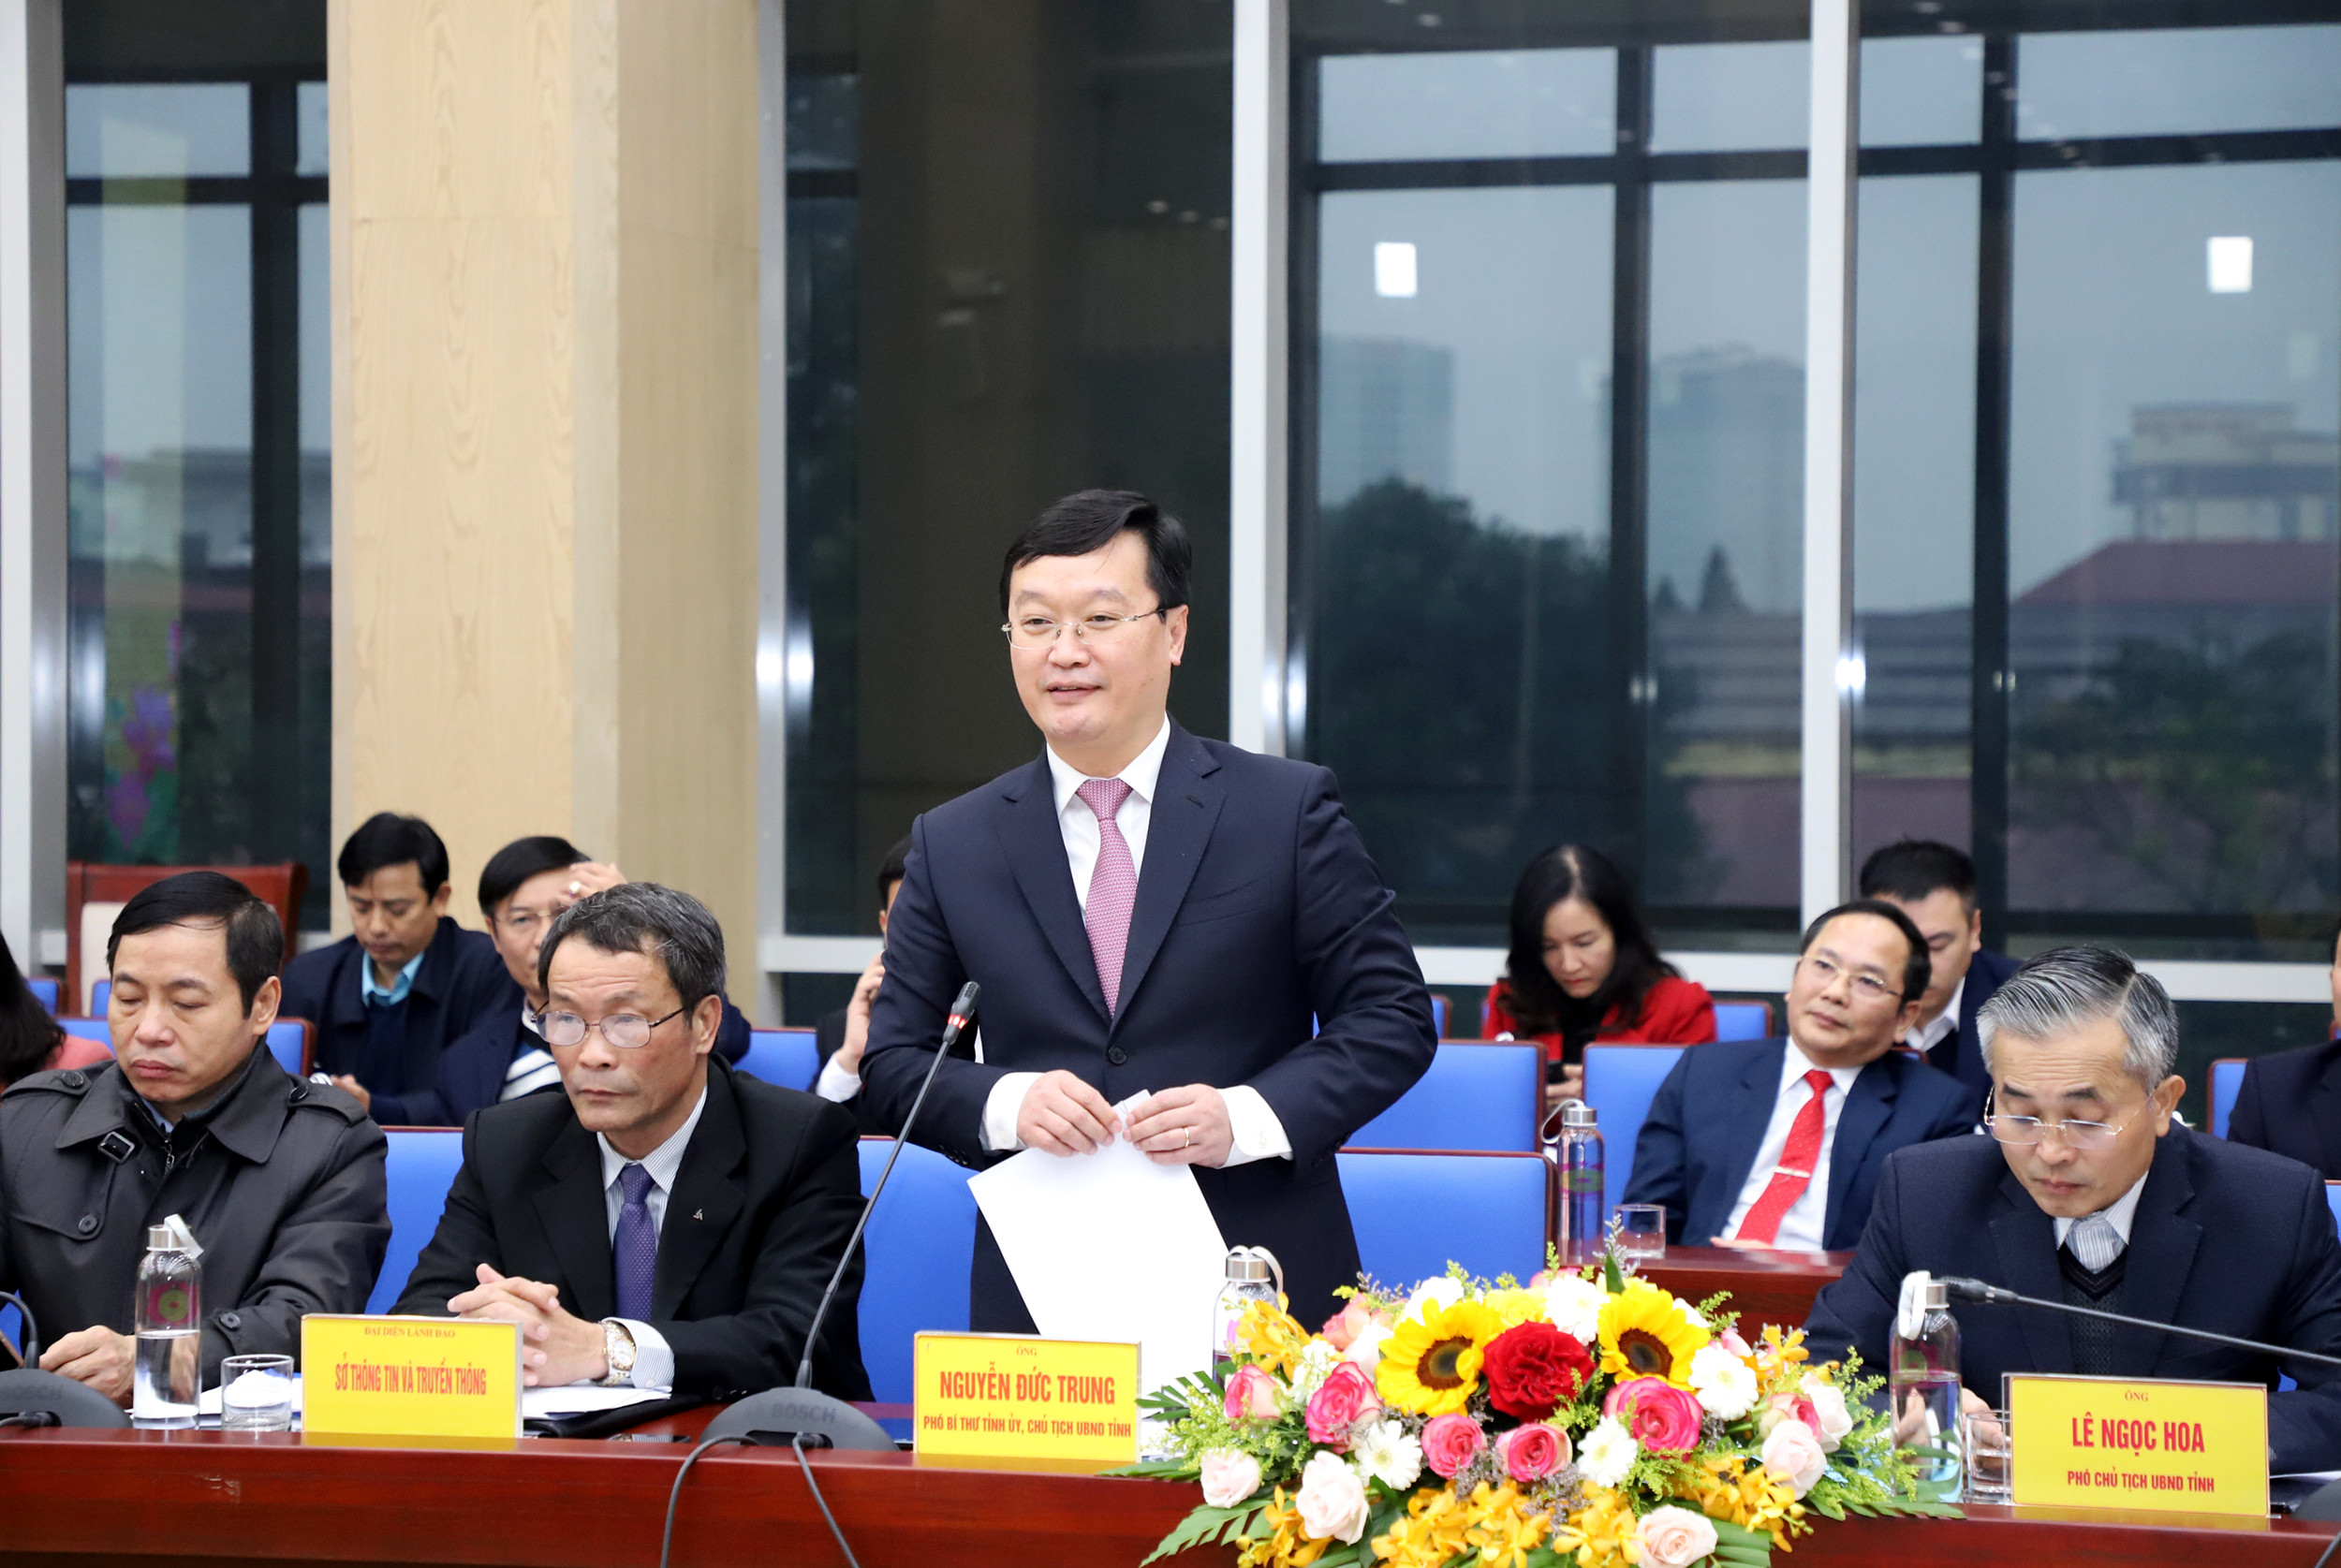 Đồng chí Nguyễn Đức Trung - Chủ tịch UBND tỉnh kết luận tại buổi lễ. Ảnh: Phạm Bằng